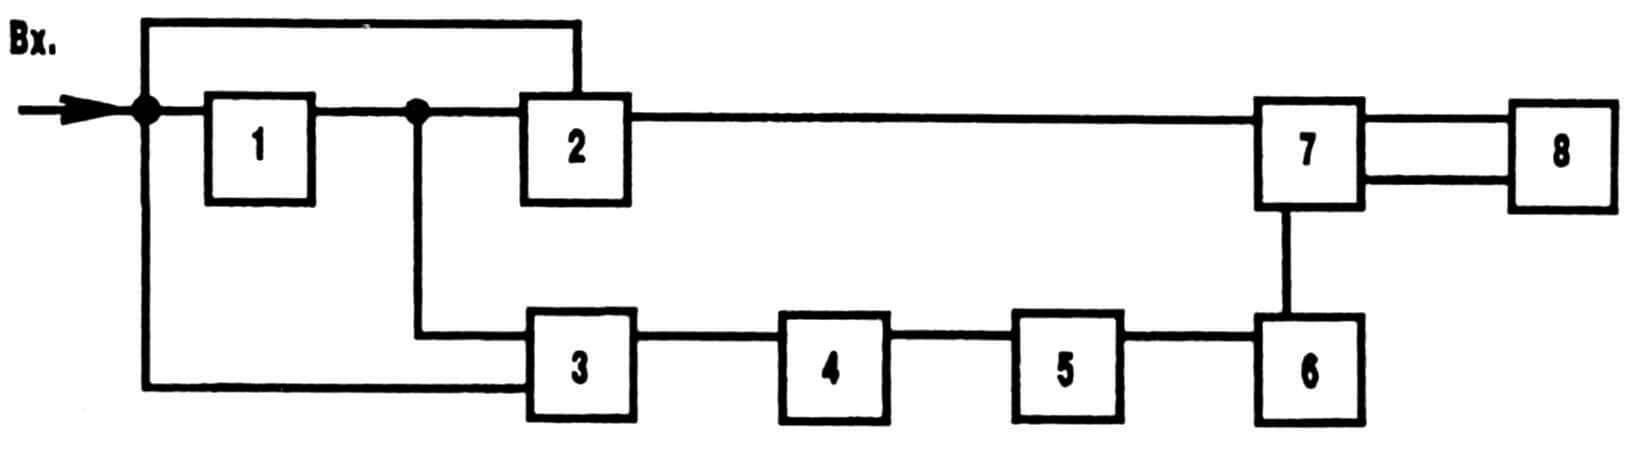 Рис. 4. Блок-схема мощного регулятора оборотов: 1 — мультивибратор ждущий; 2 — детектор длительности; 3 — схема сравнения; 4— интегратор; 5 — устройство пороговое; 6 — реле реверса; 7 — усилитель мощности выходной; 8 — устройство исполнительное (электродвигатель).